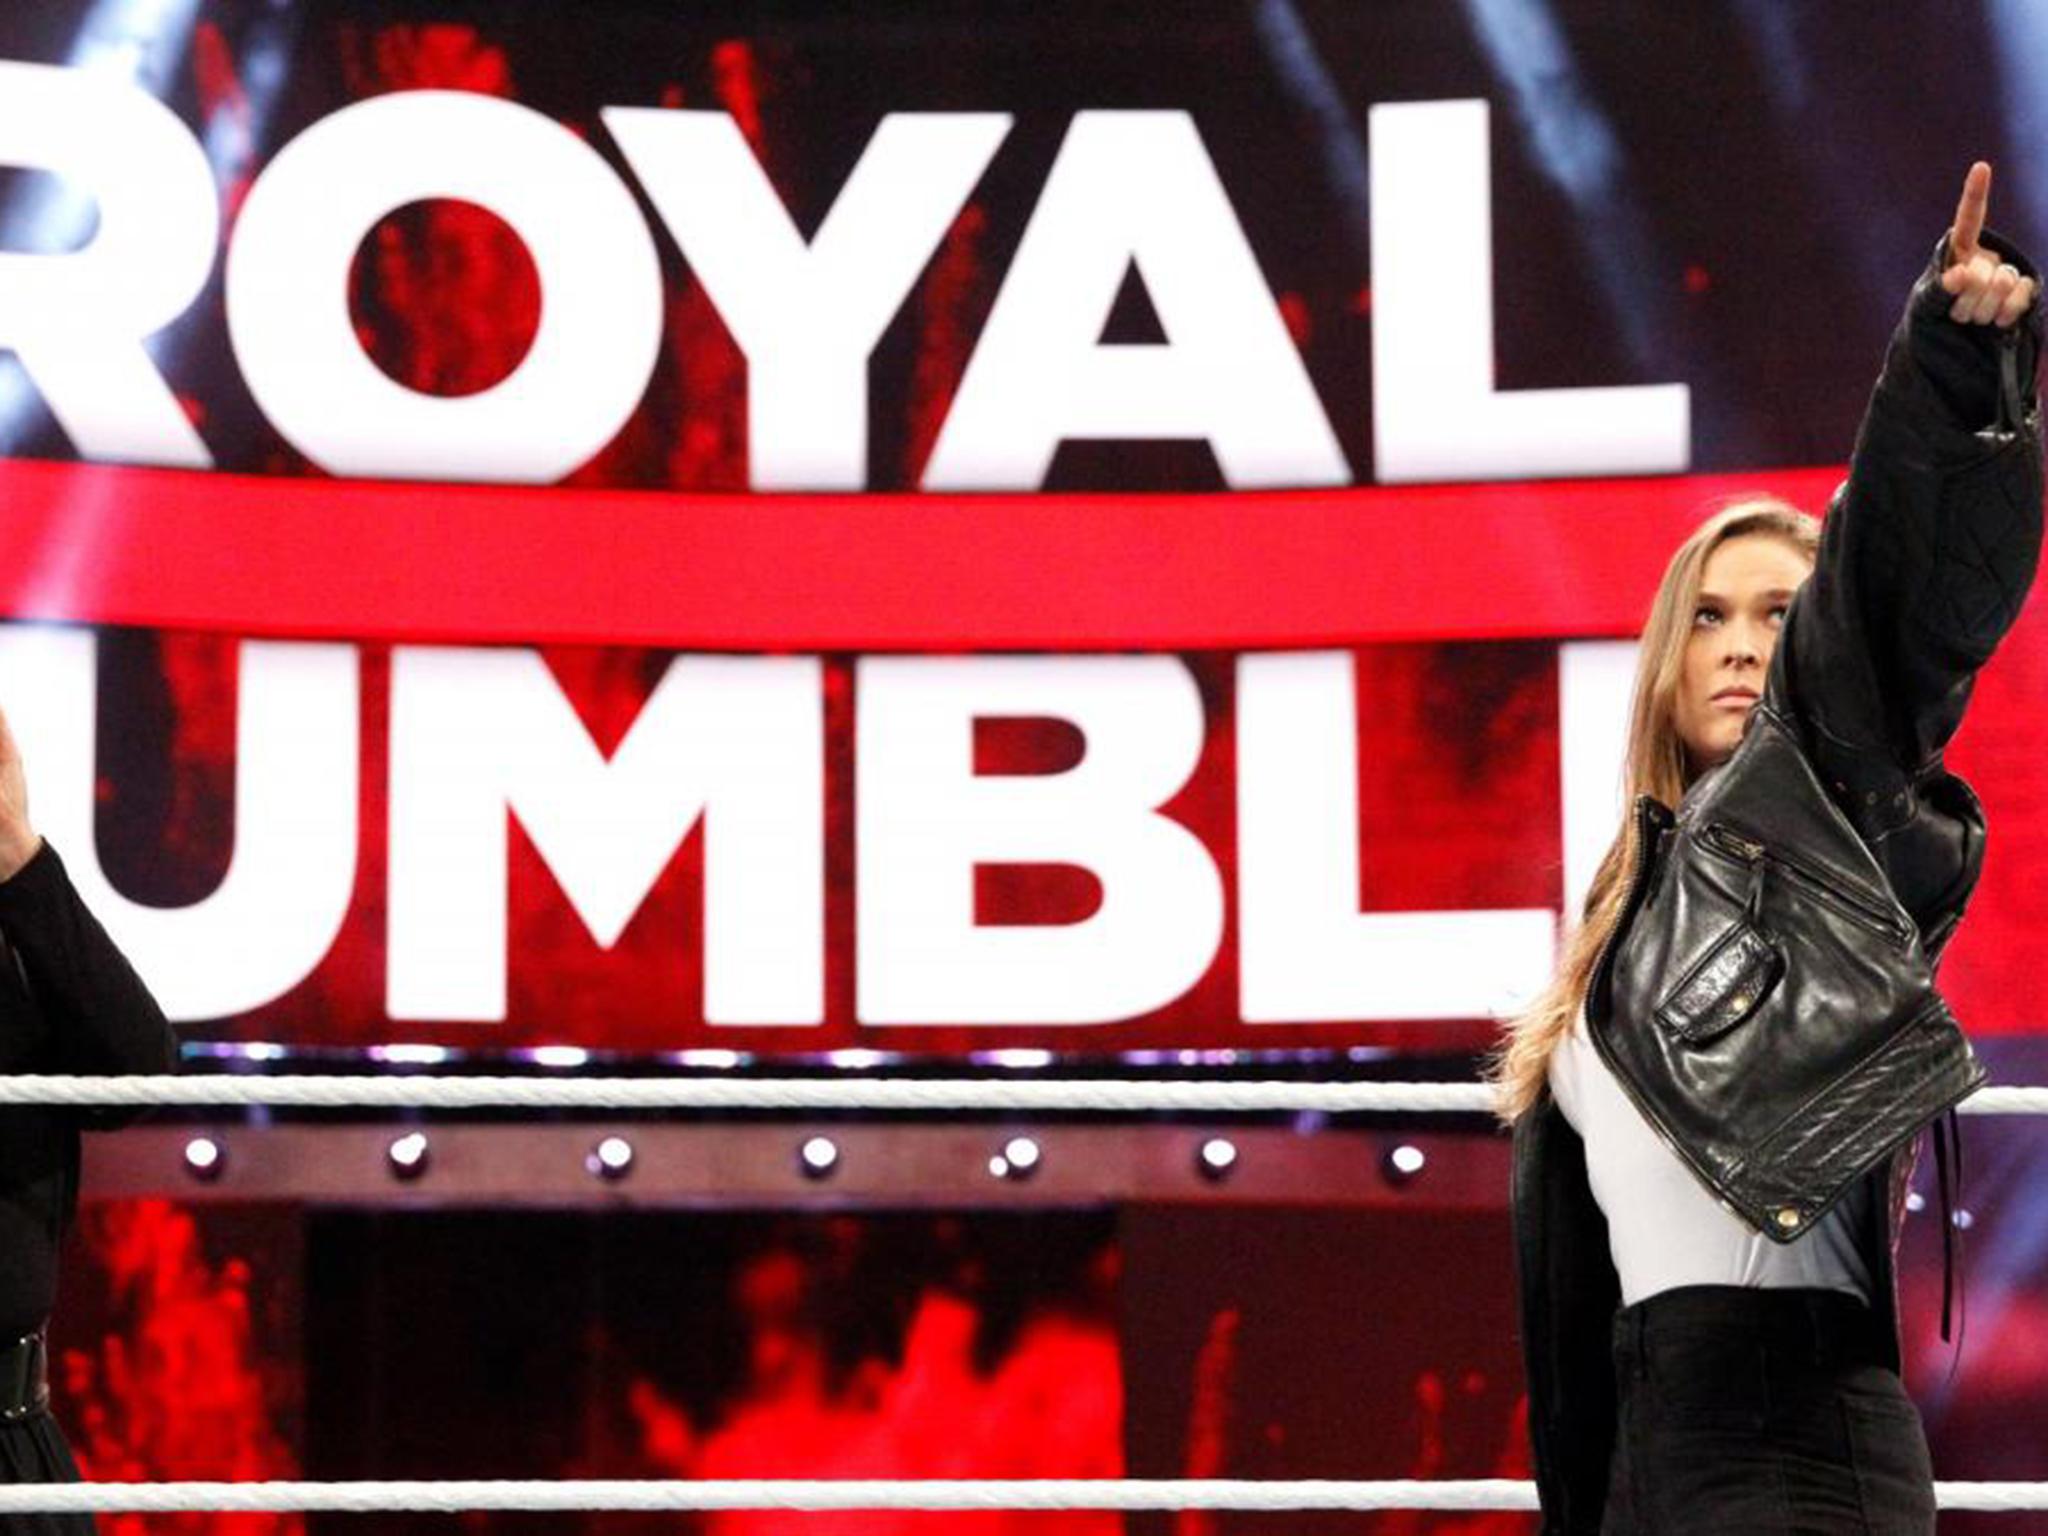 Wwe Royal Rumble 2018 Results Asuka And Shinsuke Nakamura Win On Images, Photos, Reviews